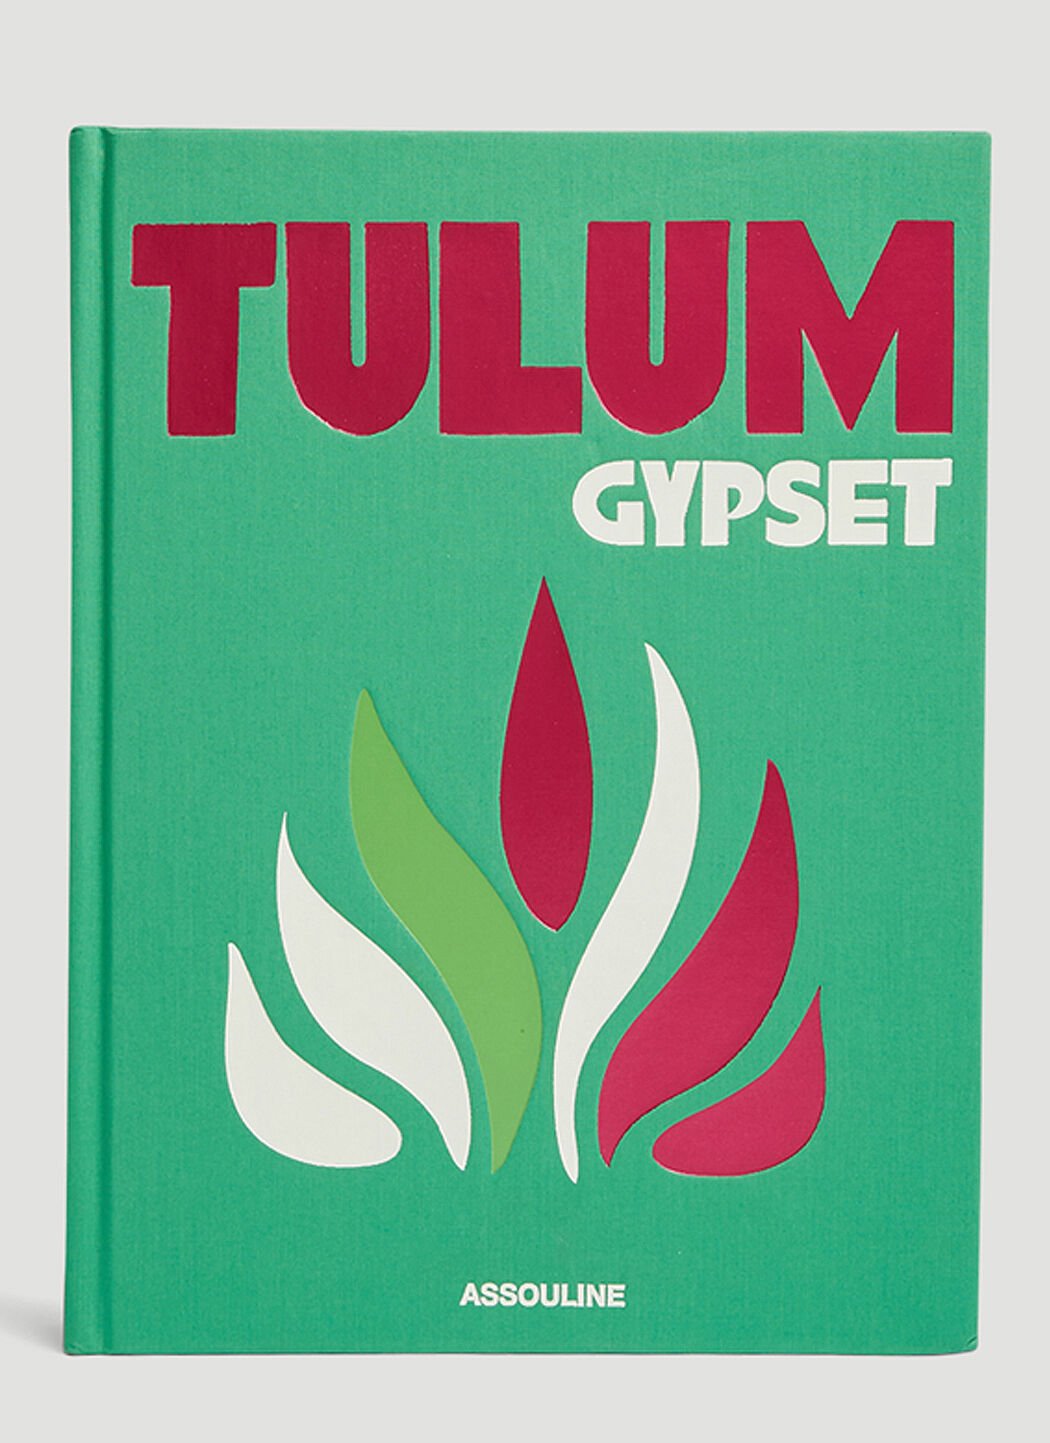 Phaidon Tulum Gypset Book ベージュ phd0553013